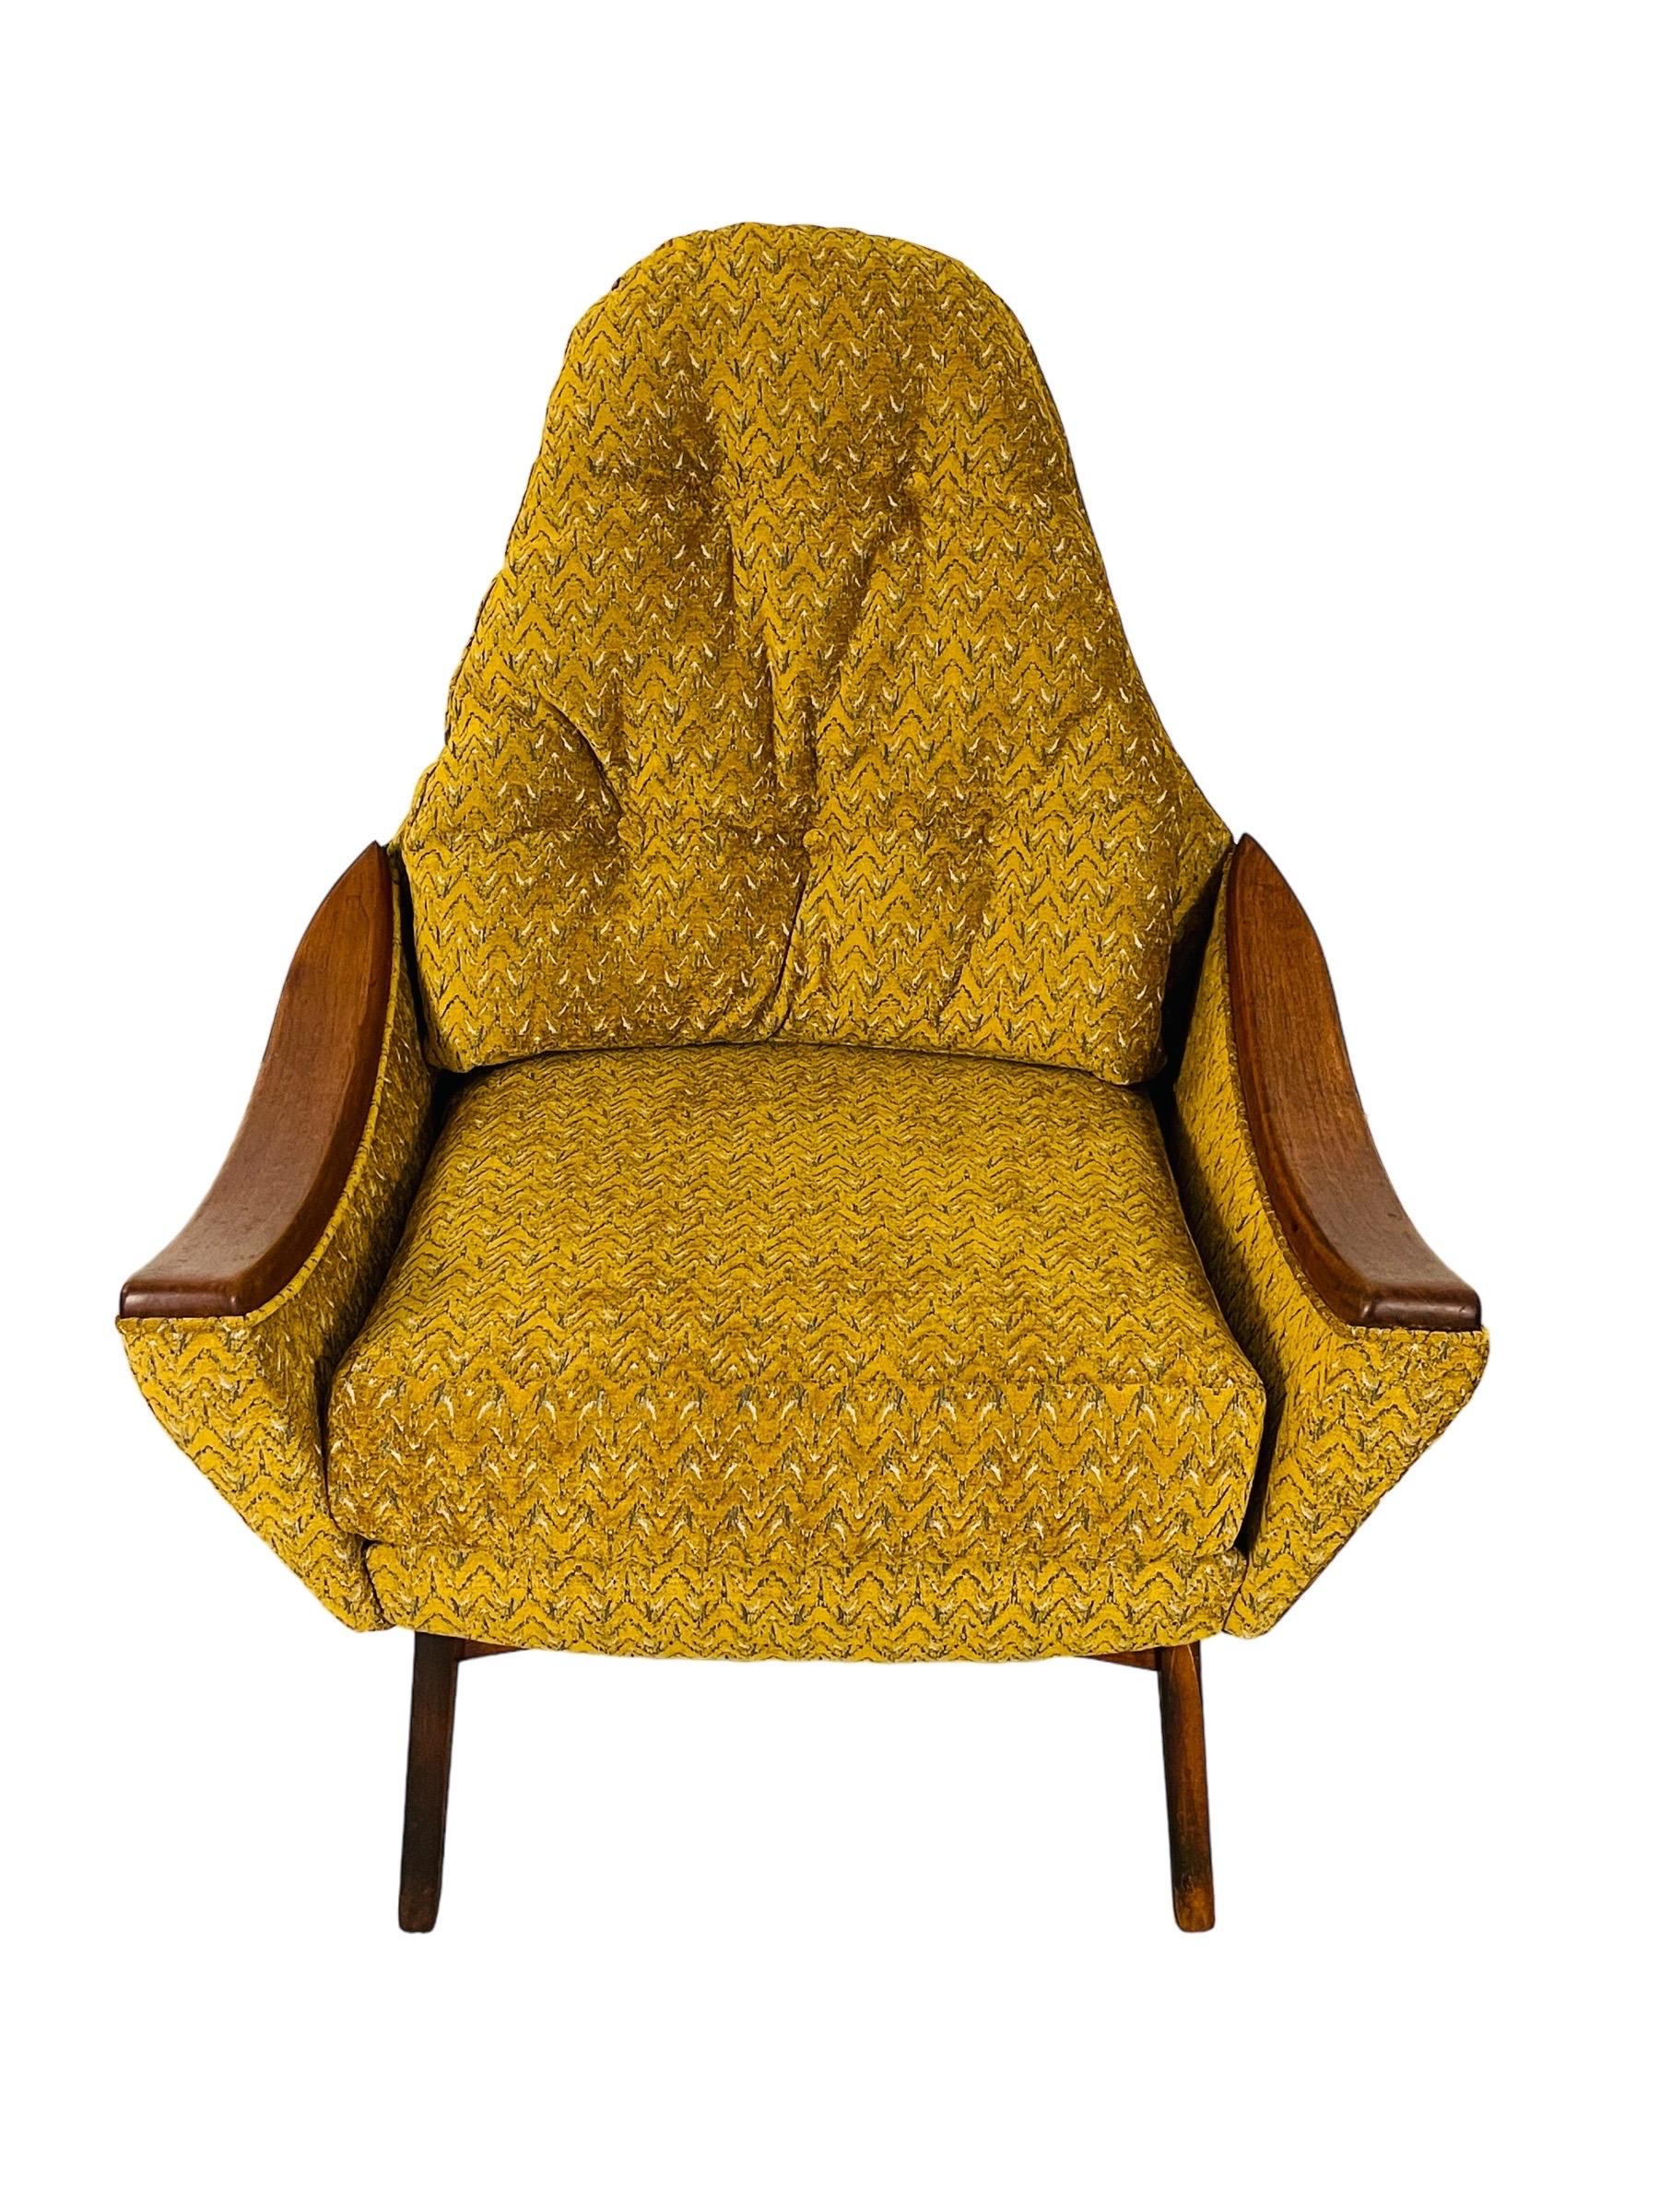 Entdecken Sie die Verschmelzung von klassischem Design und modernem Komfort mit unserem Adrian Pearsall Lounge Chair für Craft Associates. Dieses ikonische Stück, das jetzt neu gepolstert wurde, ist ein Zeugnis von Pearsalls Designethos - organische